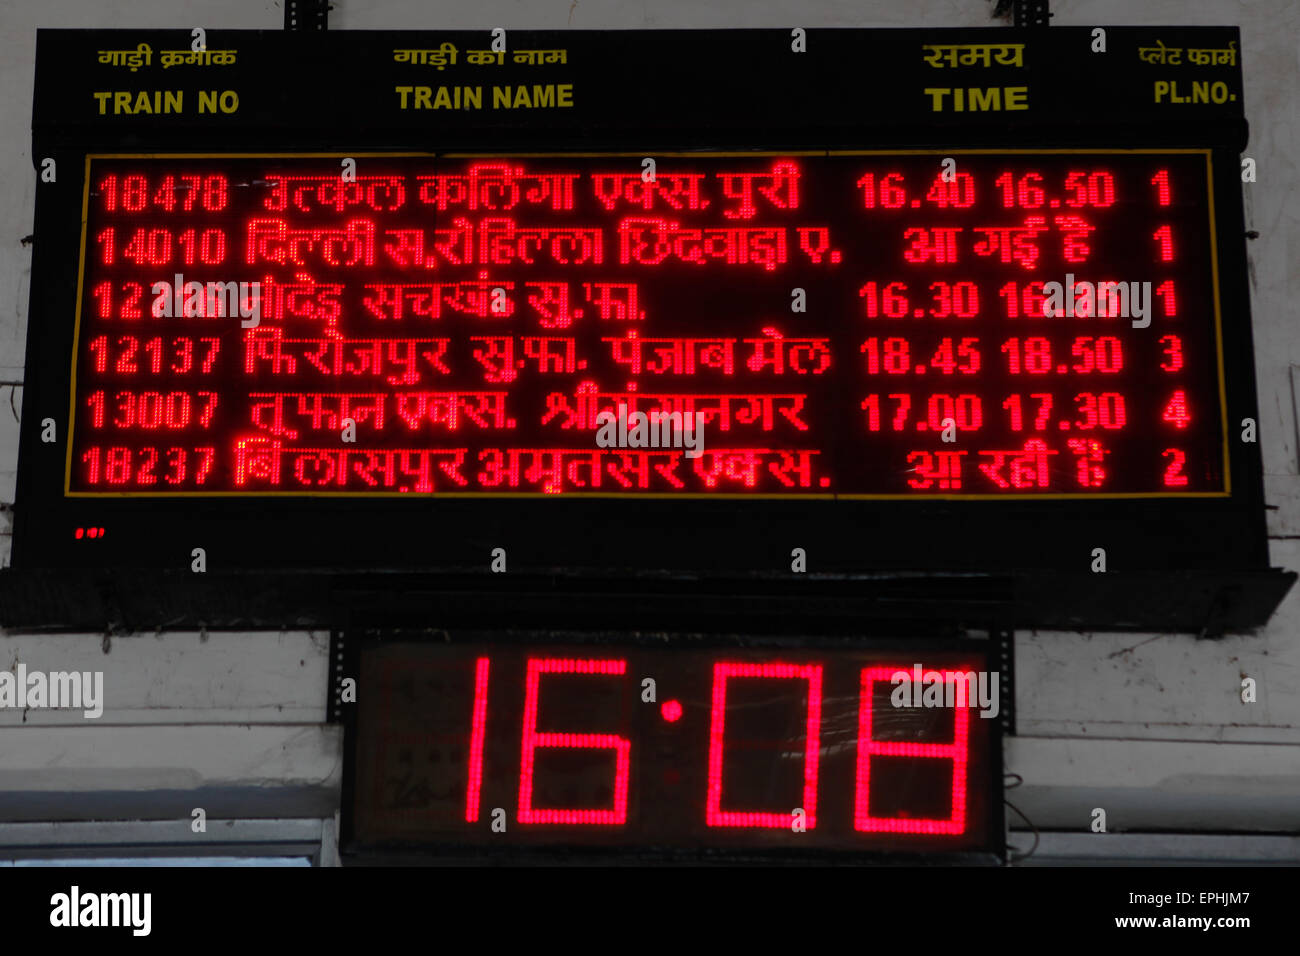 Informazioni su partenza e arrivo alla stazione ferroviaria di Agra Cantt ad Agra, Uttar Pradesh, India. Foto Stock